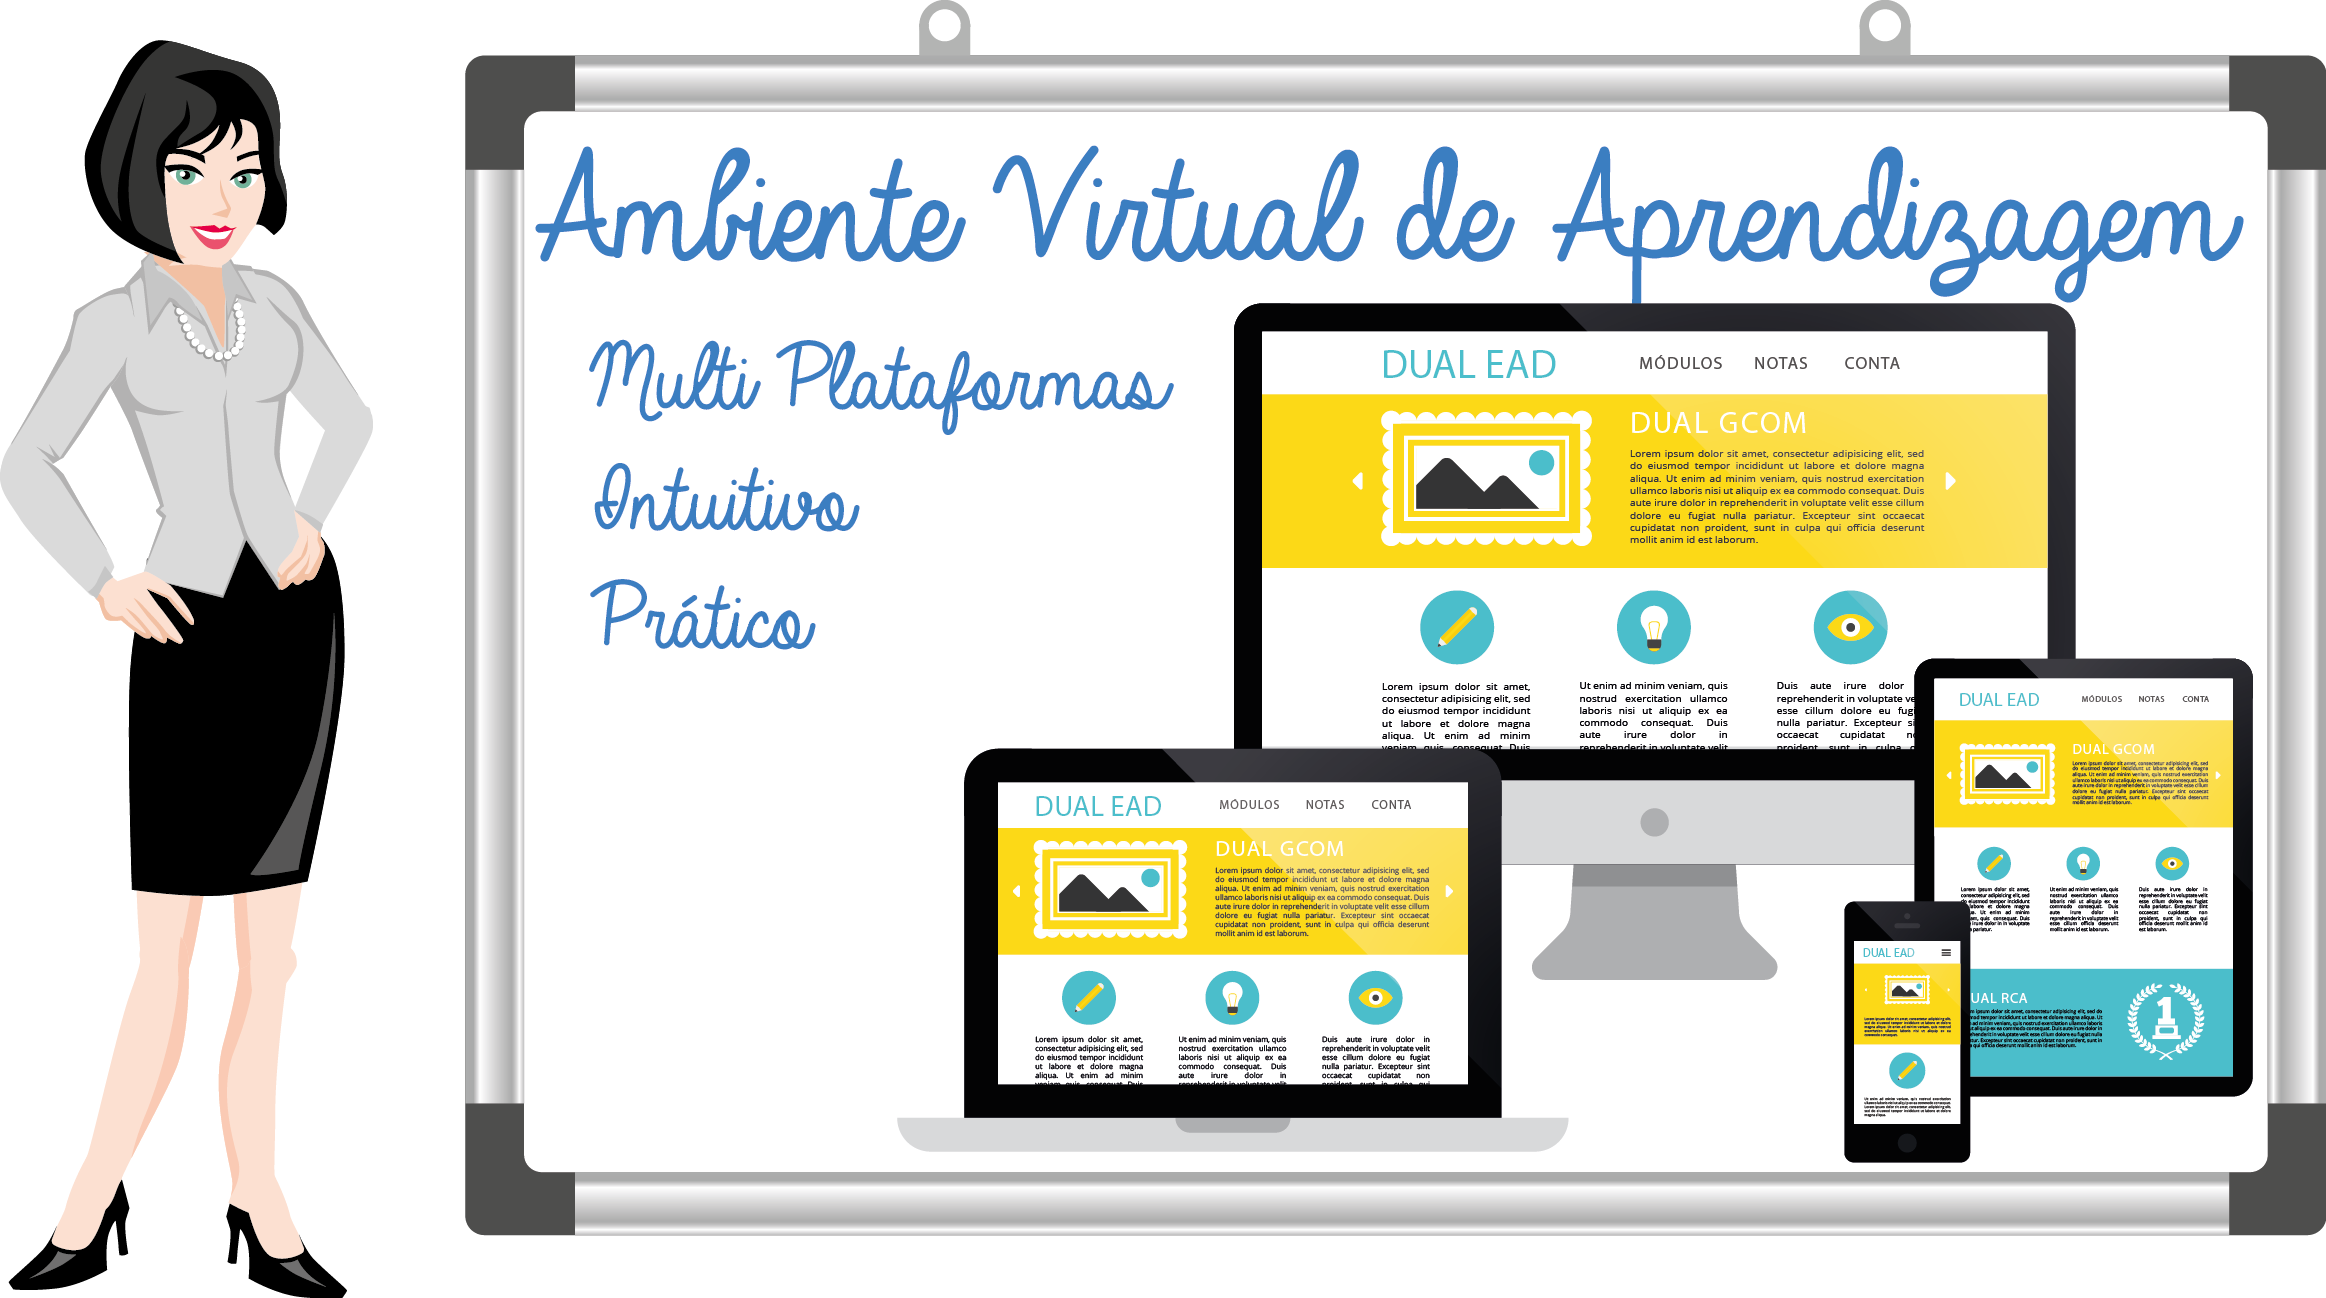 O que é “Ambiente Virtual de Aprendizagem” (AVA)?